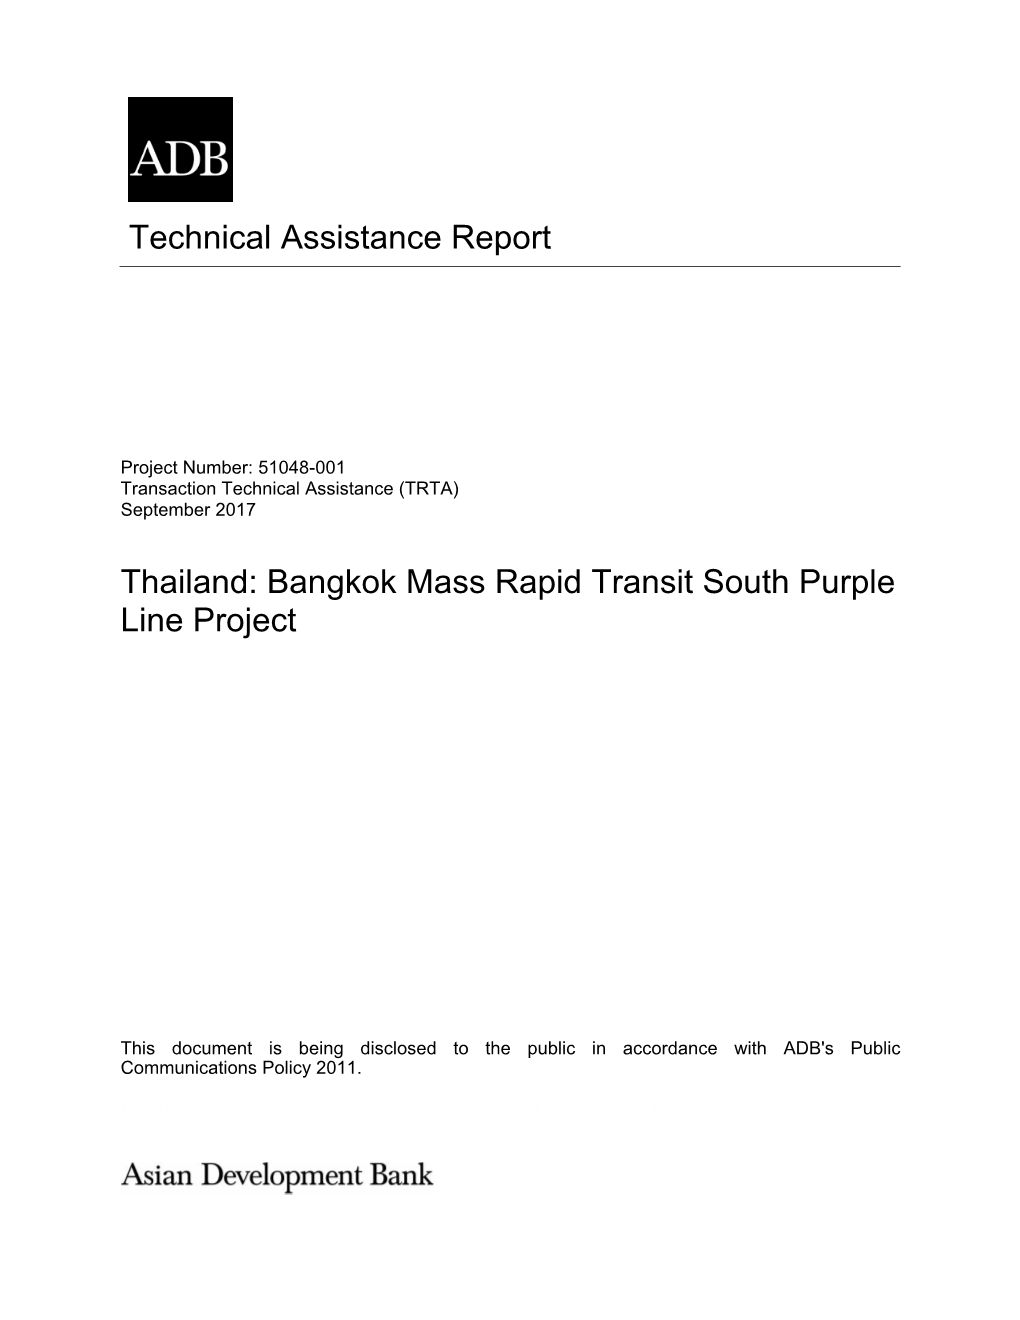 Bangkok Mass Rapid Transit South Purple Line Project